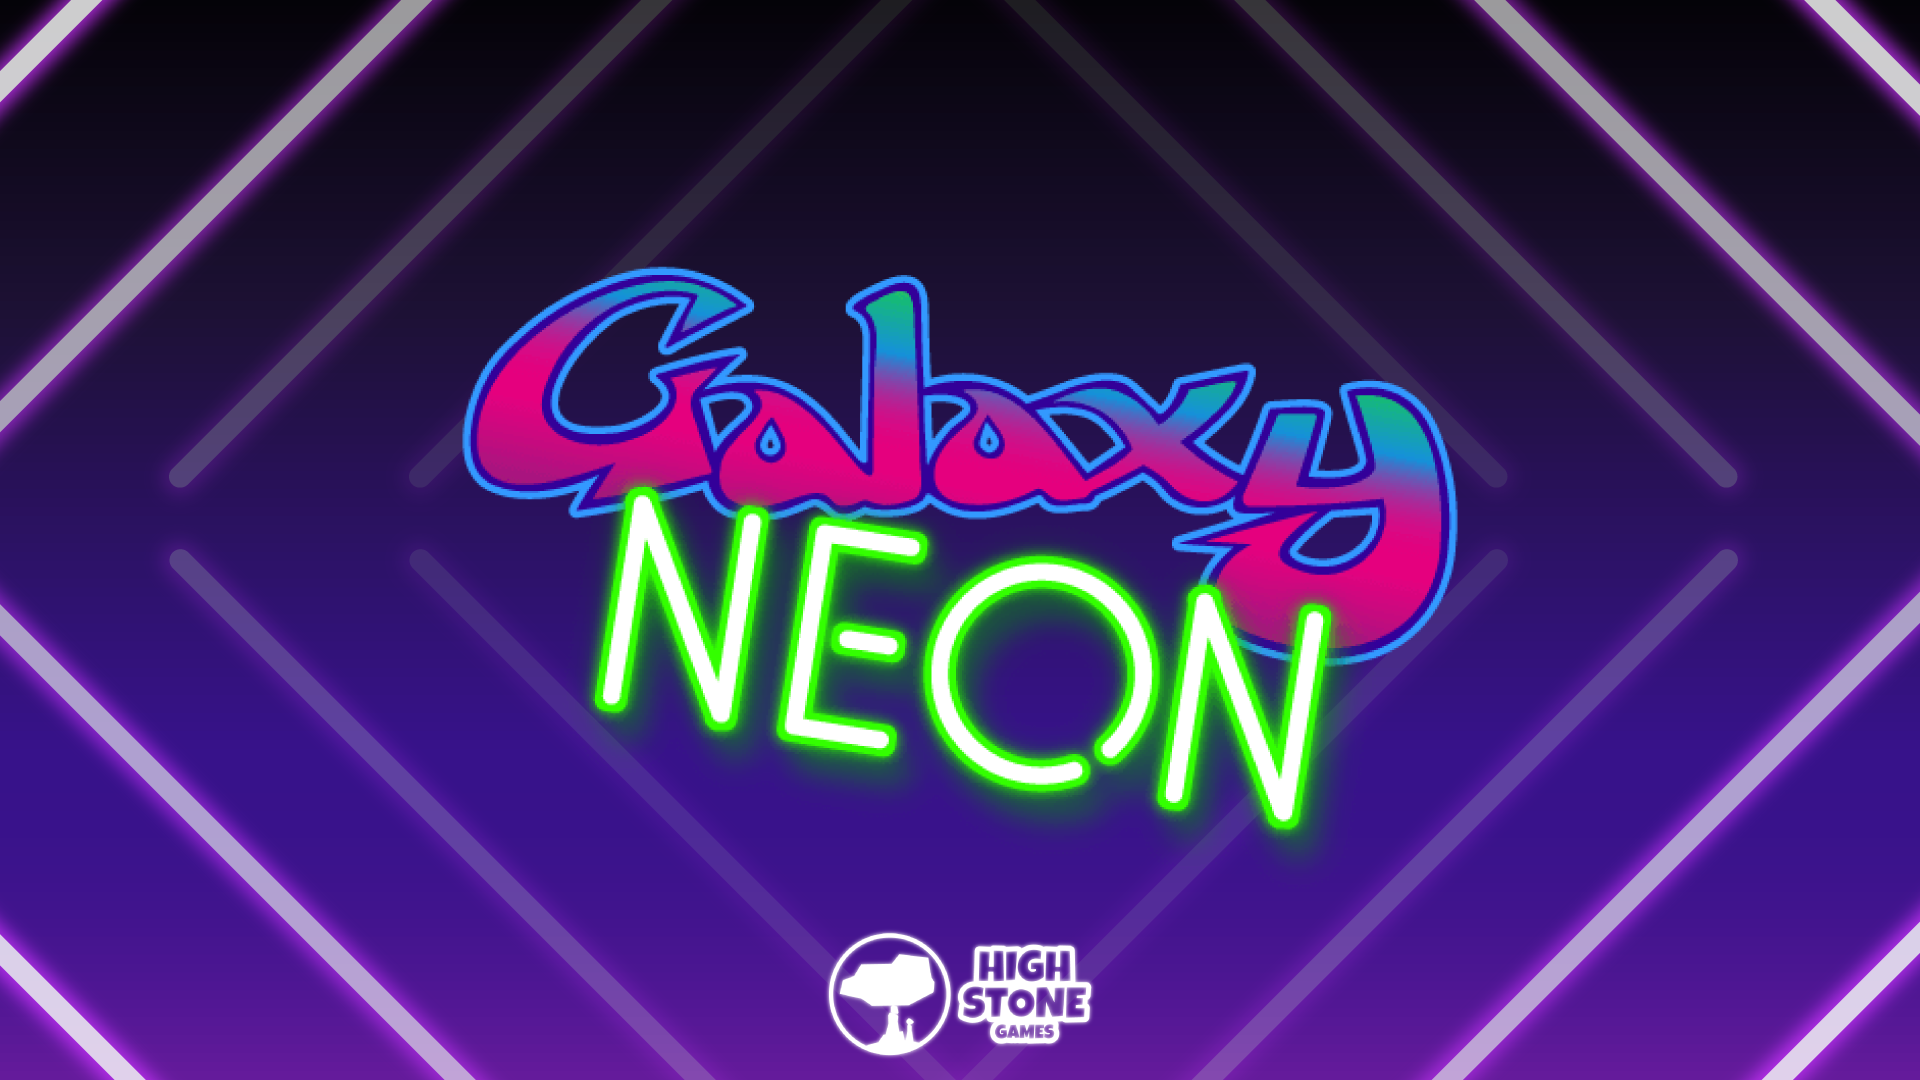 Galaxy Neon